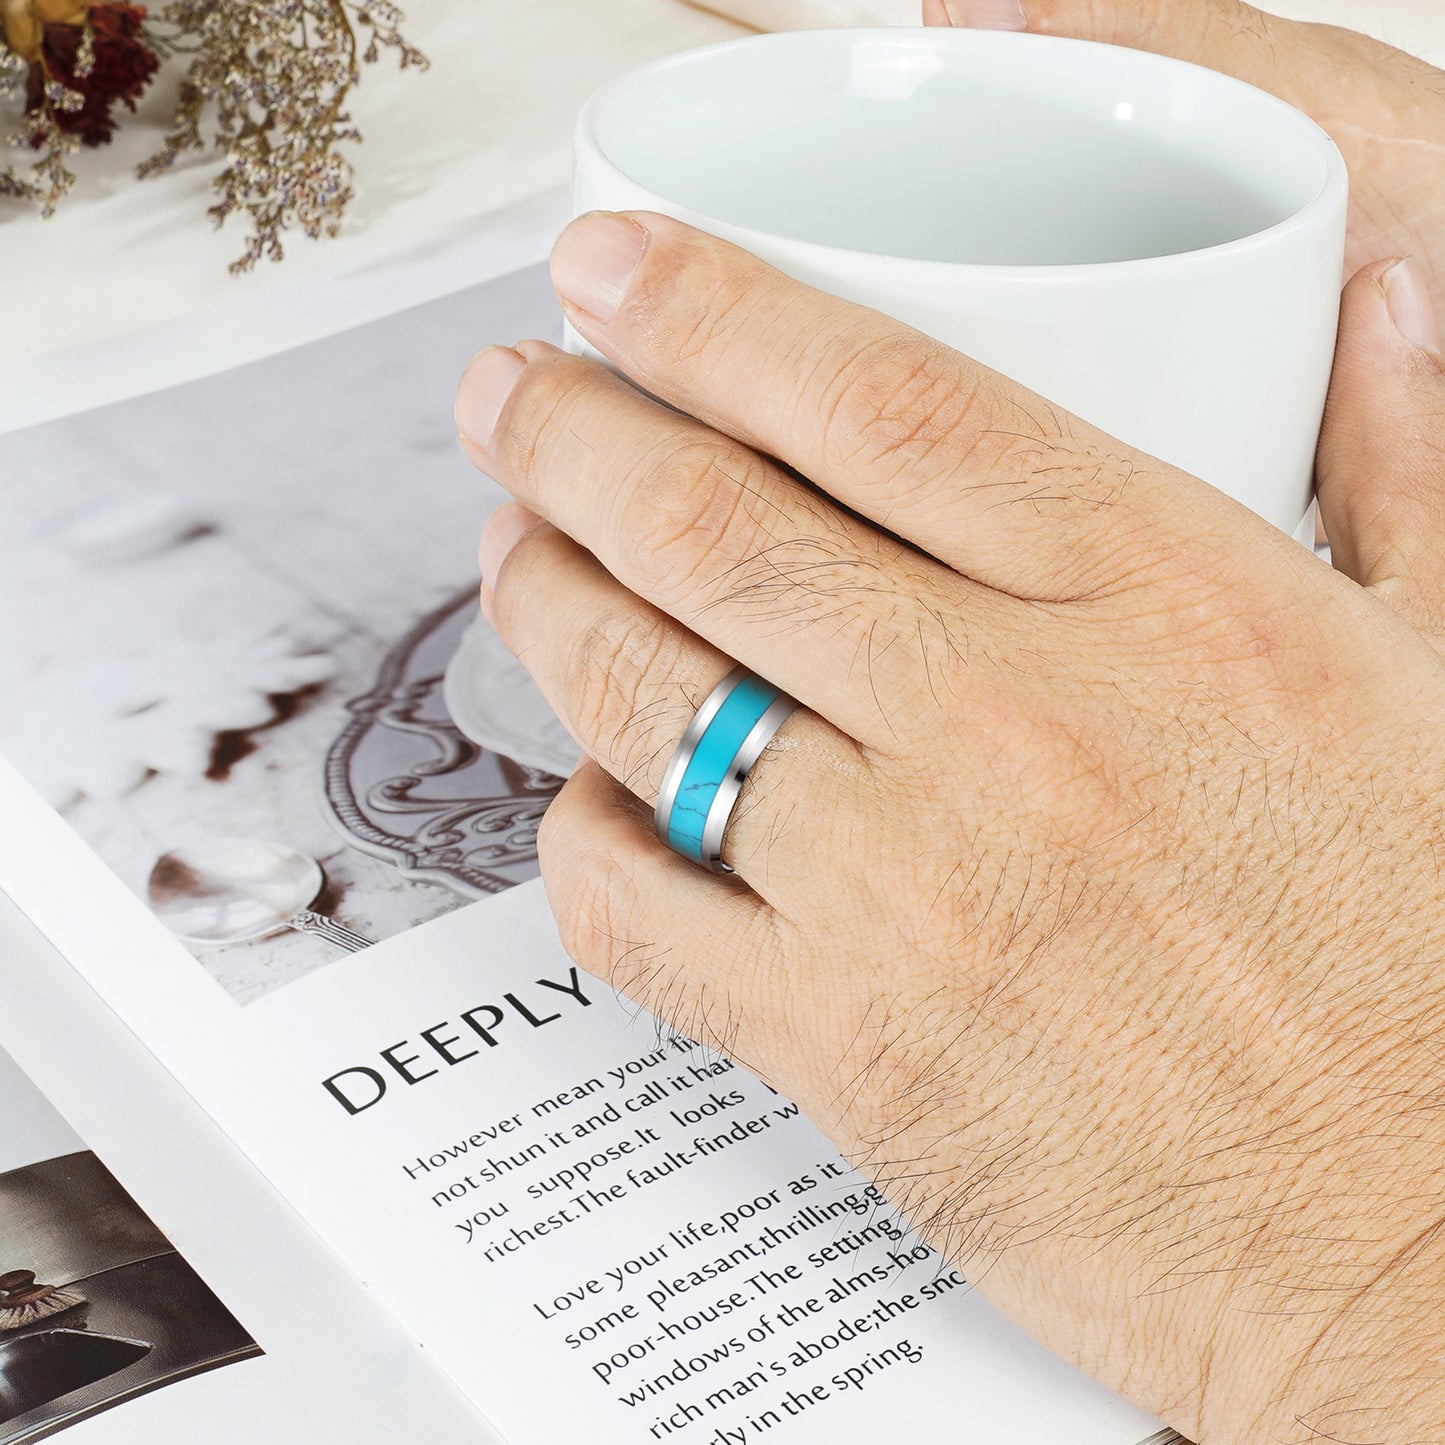 Joey Turquoise Men's Wedding Ring